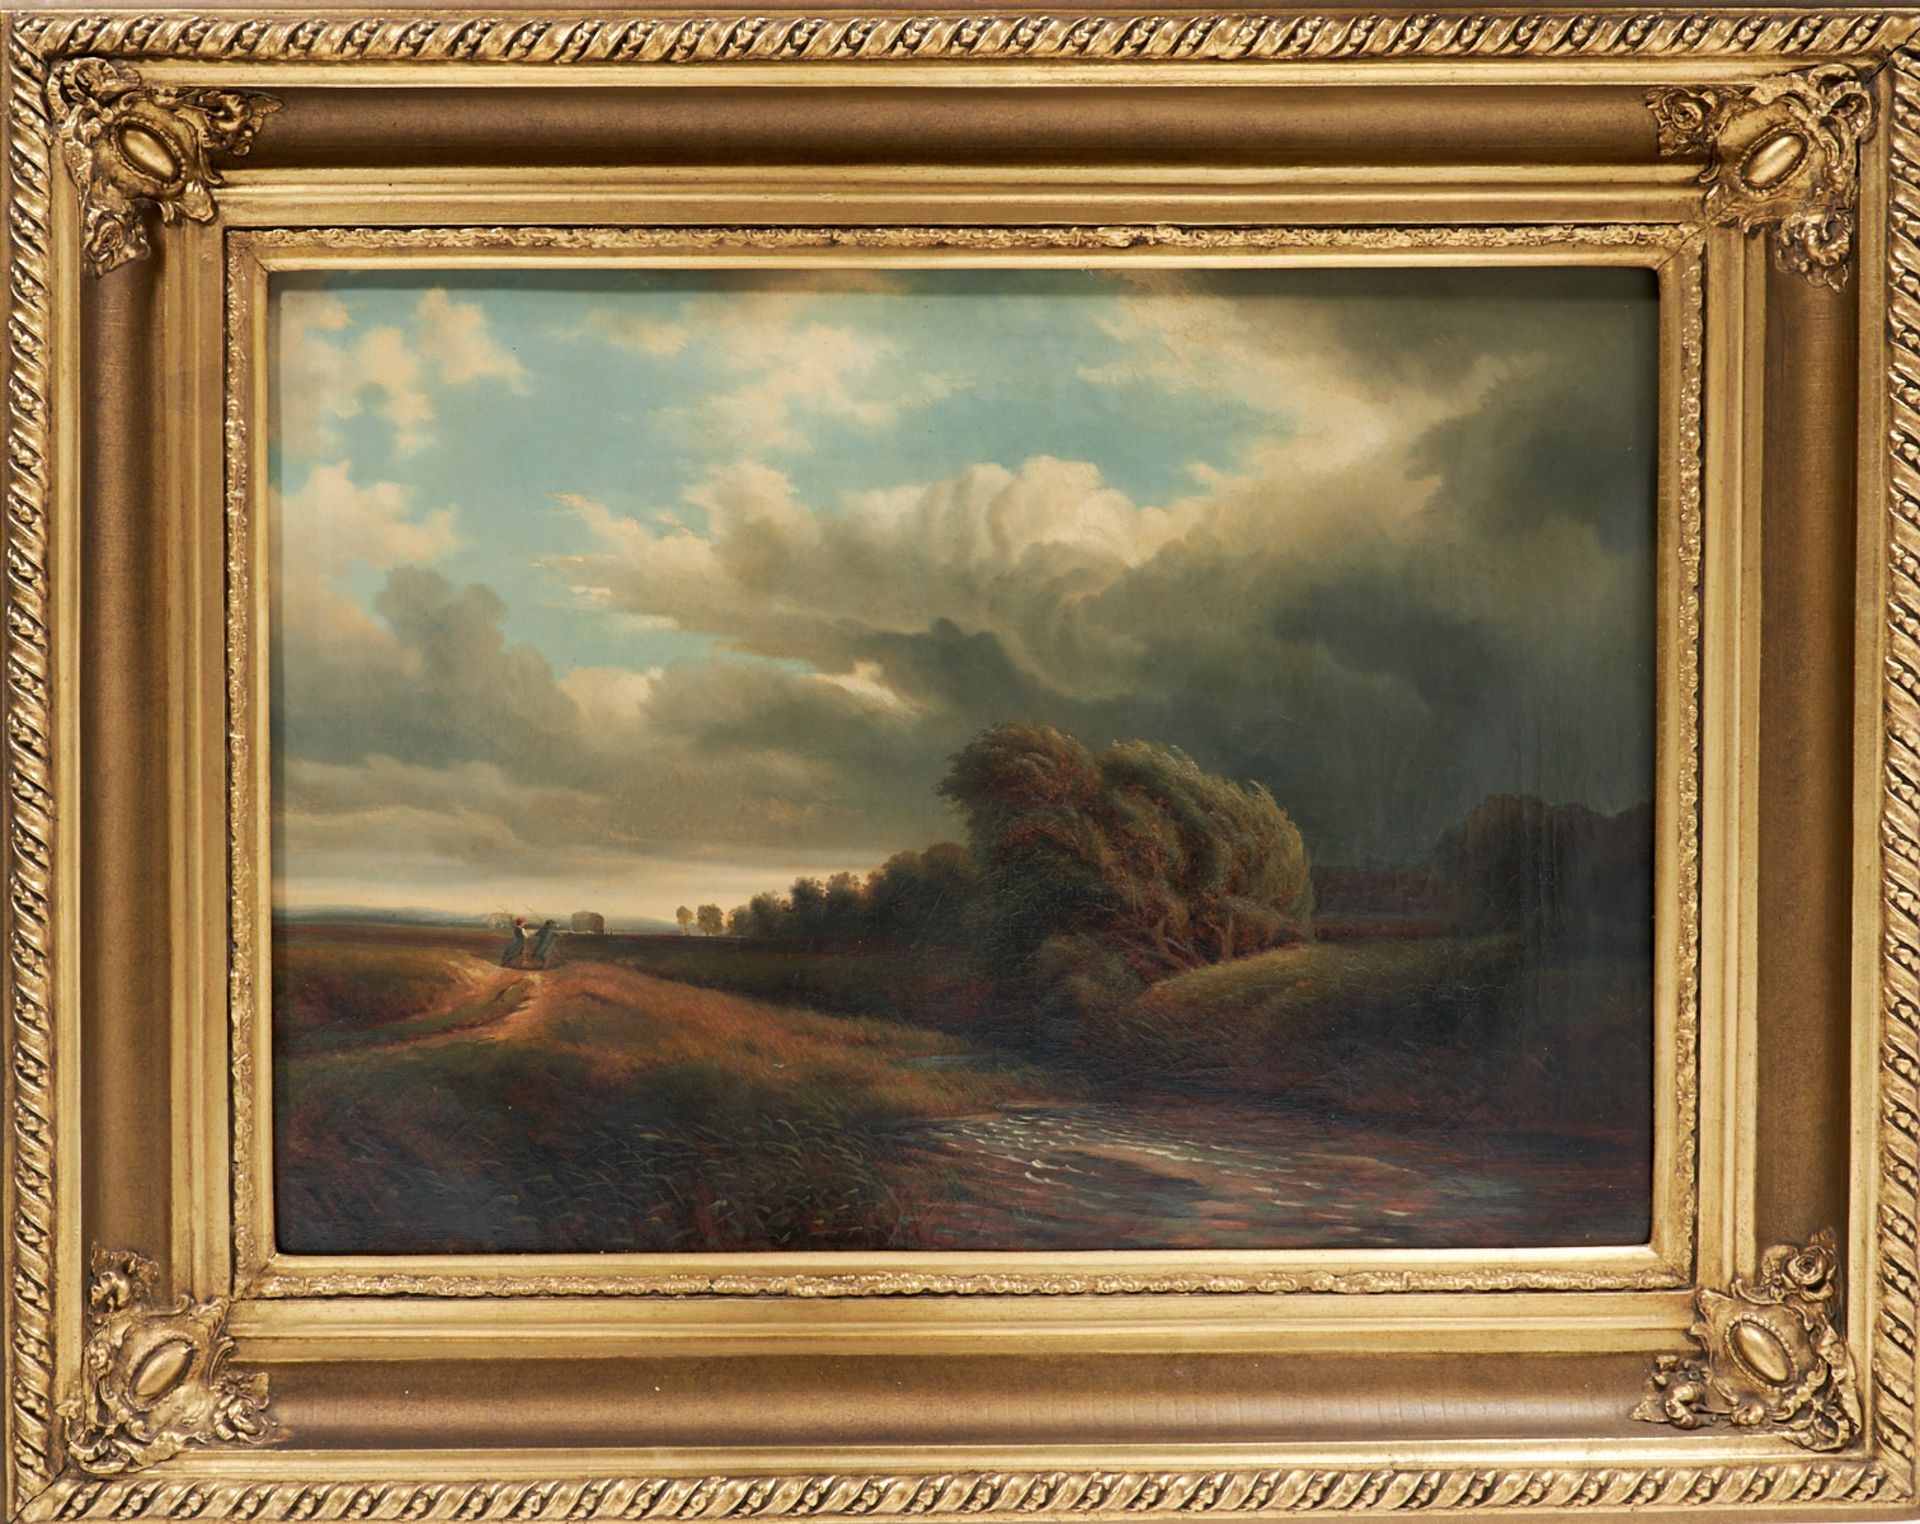 Künstler des 19. Jahrhunderts Ein Sturm zieht auf. Öl auf Leinwand. Nicht sign., nicht bezeichnet - Bild 2 aus 2